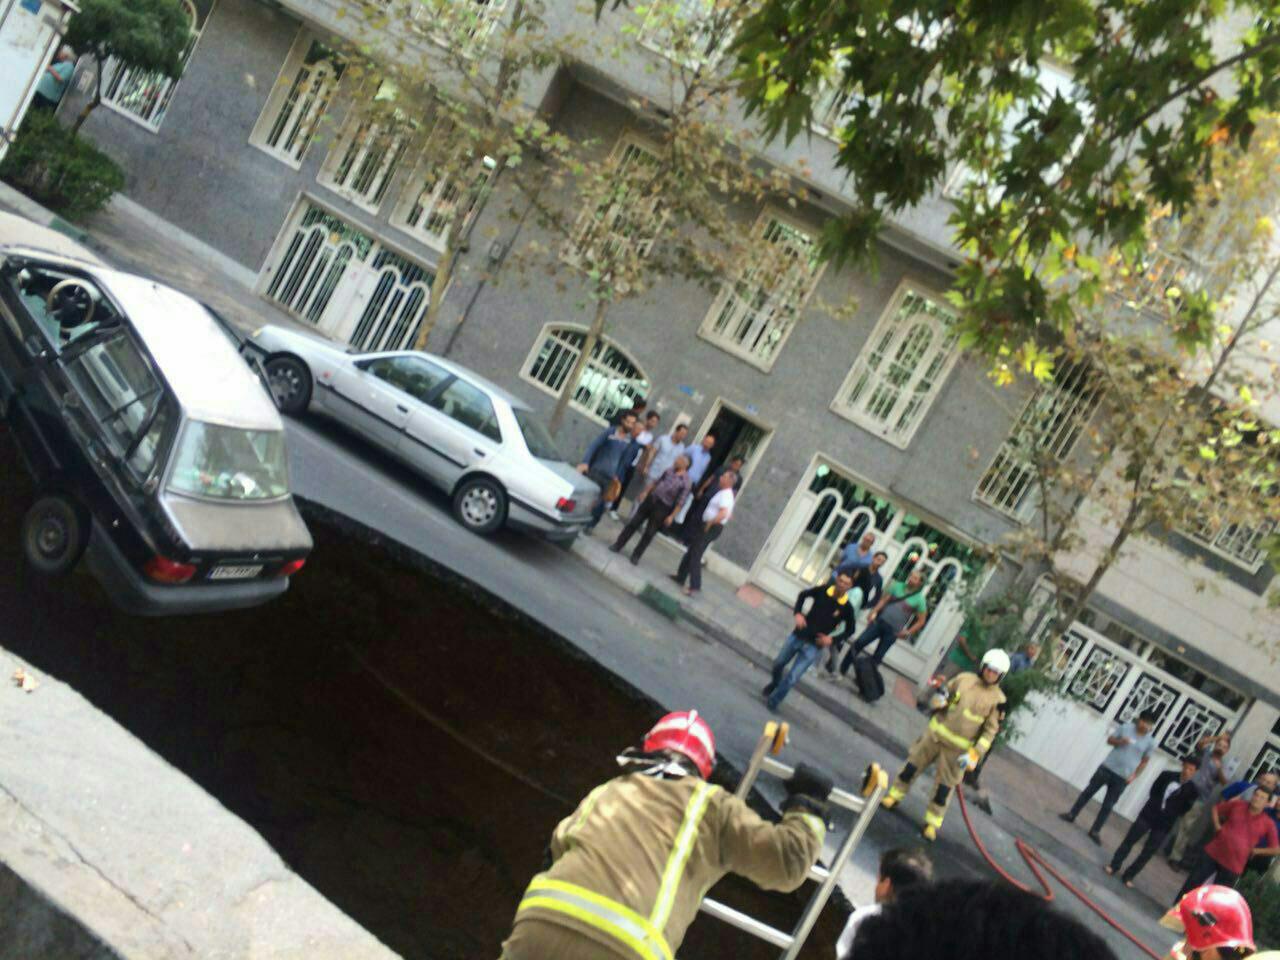 نشست زمین در تهران/ سقوط یک خودرو به داخل گودال 7 متری/انسداد خیابان پیامبر+تصاویر